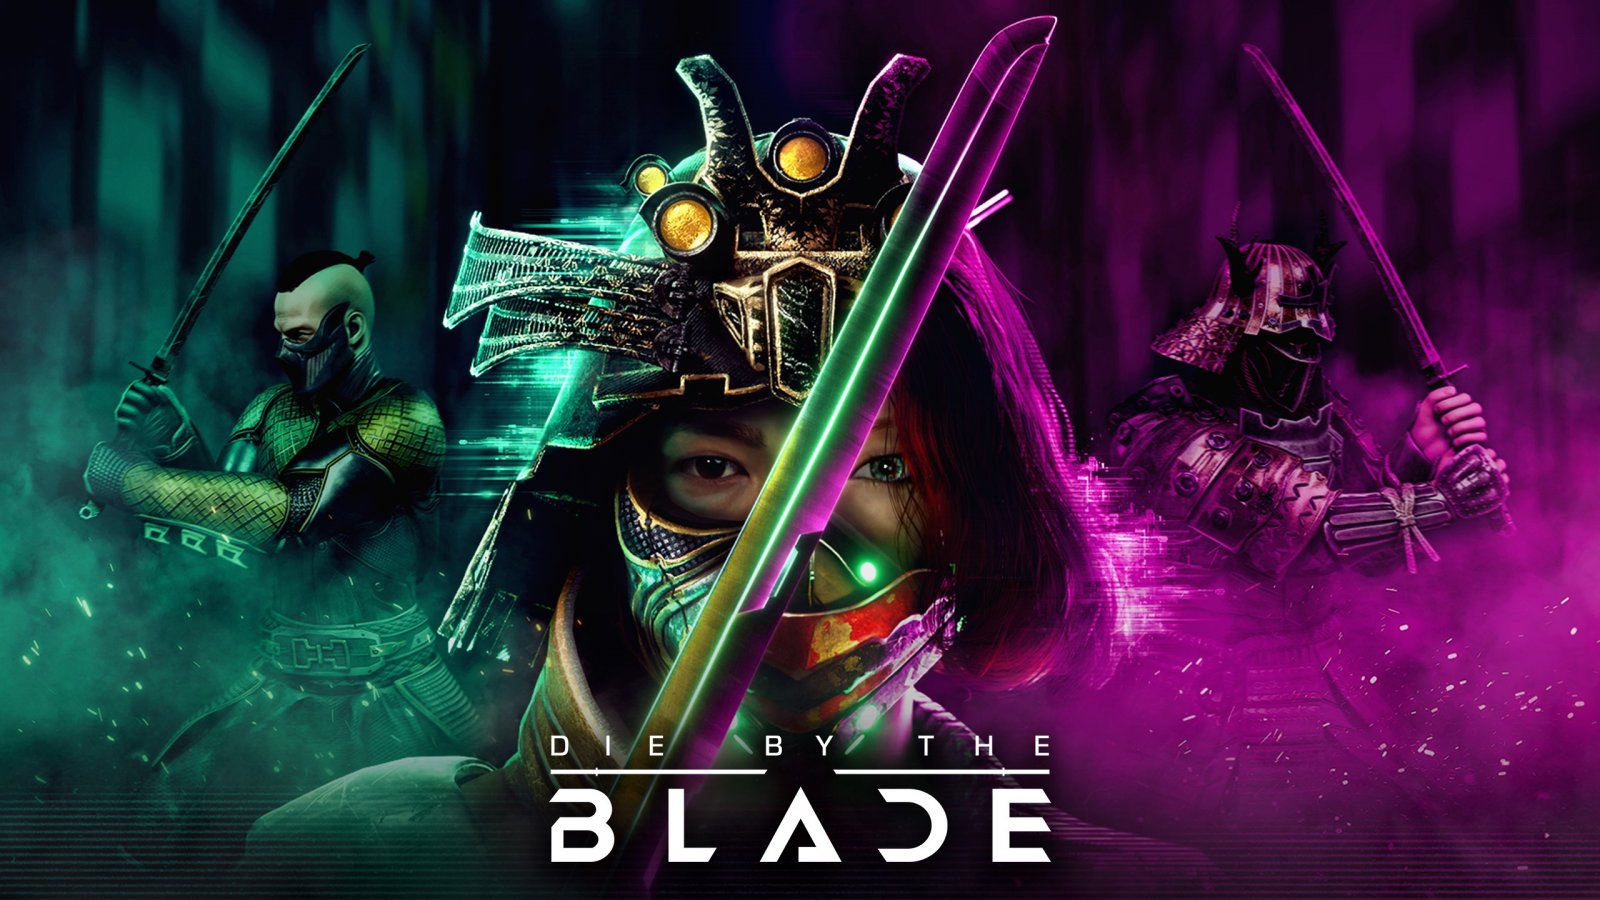 Die by the Blade, il provato della nuova demo